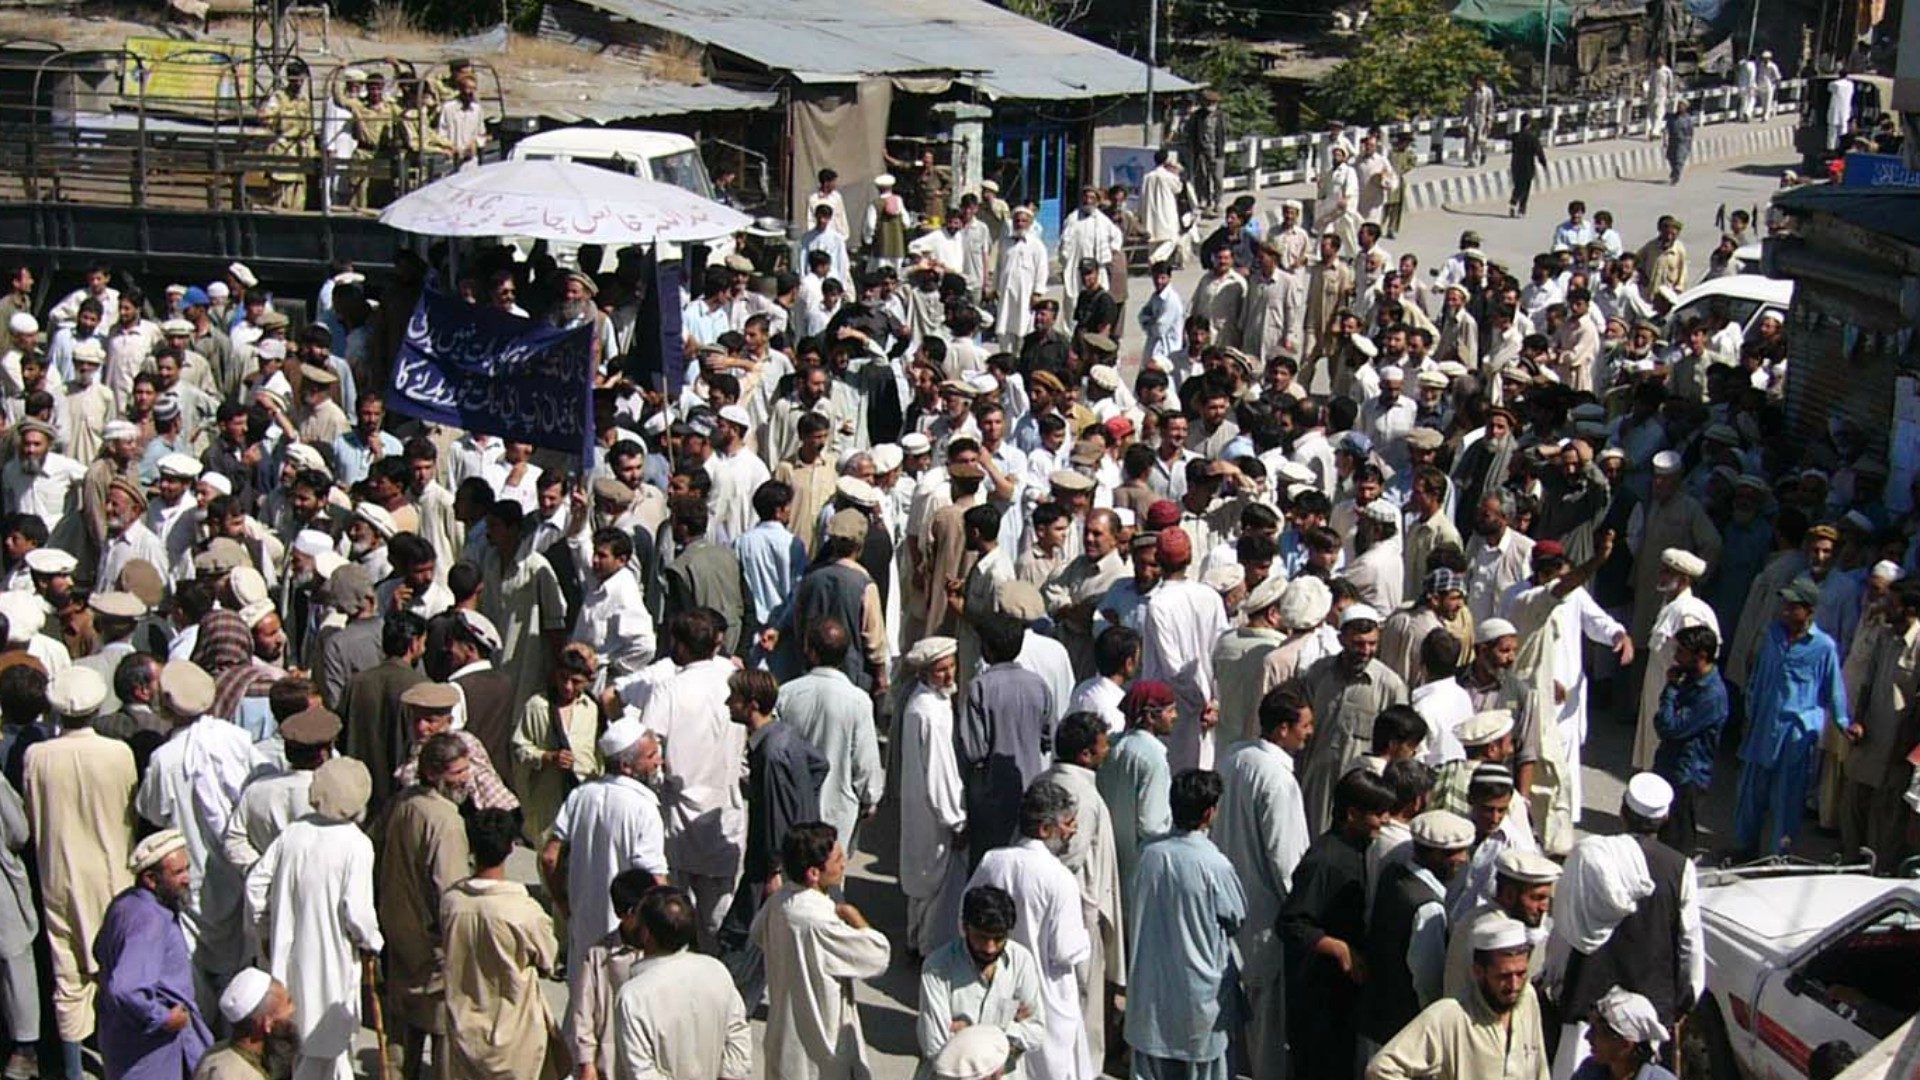 Au Pakistan, les pressions sont vives à l'encontre des minorités religieuses (Photo d'illustration:Flickr/CC BY-NC/©Ground Report)